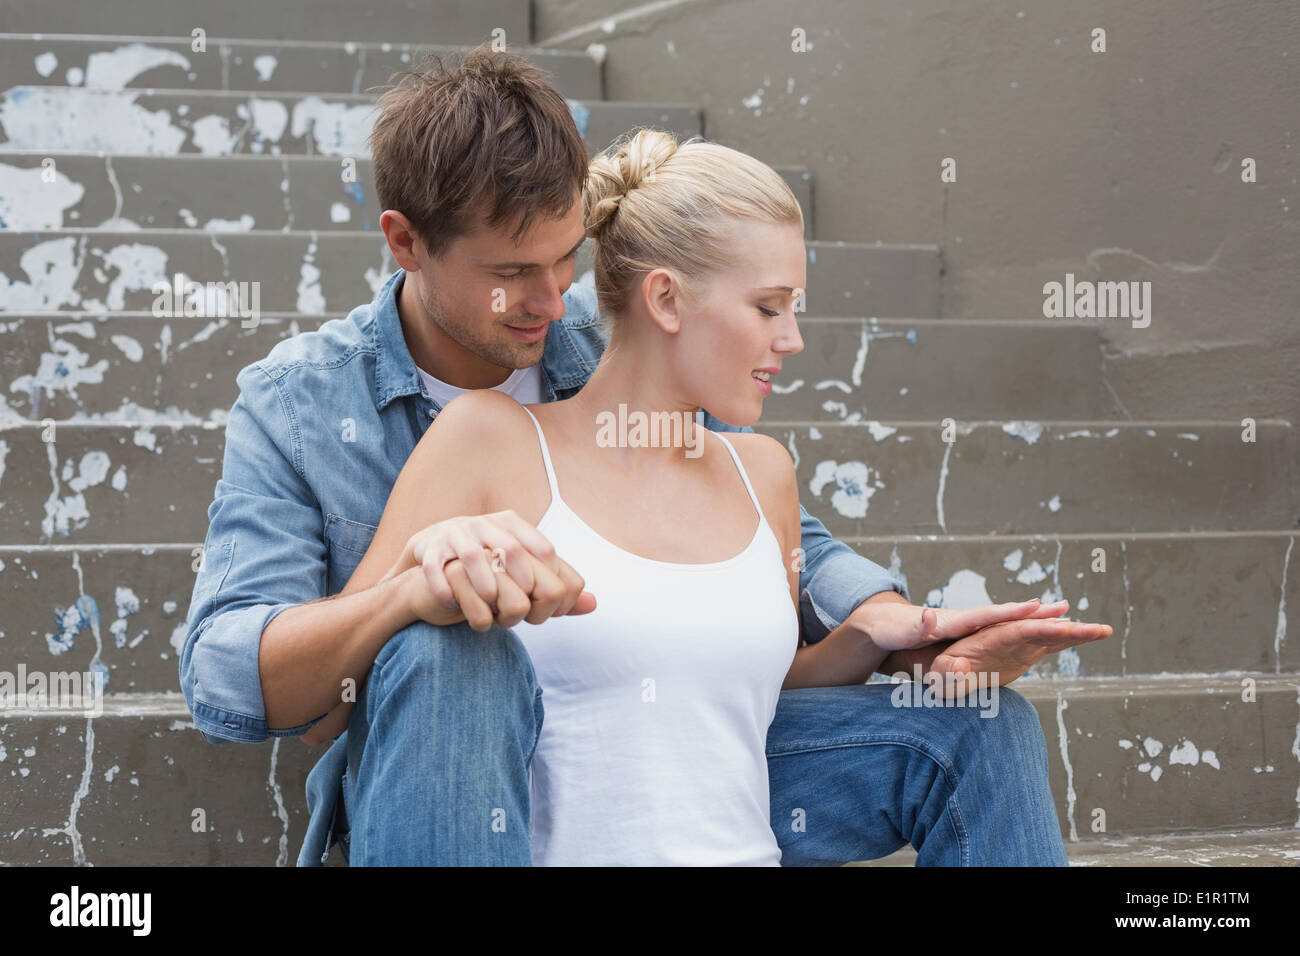 Hip coppia giovane seduto sui gradini mostrando affetto Foto Stock